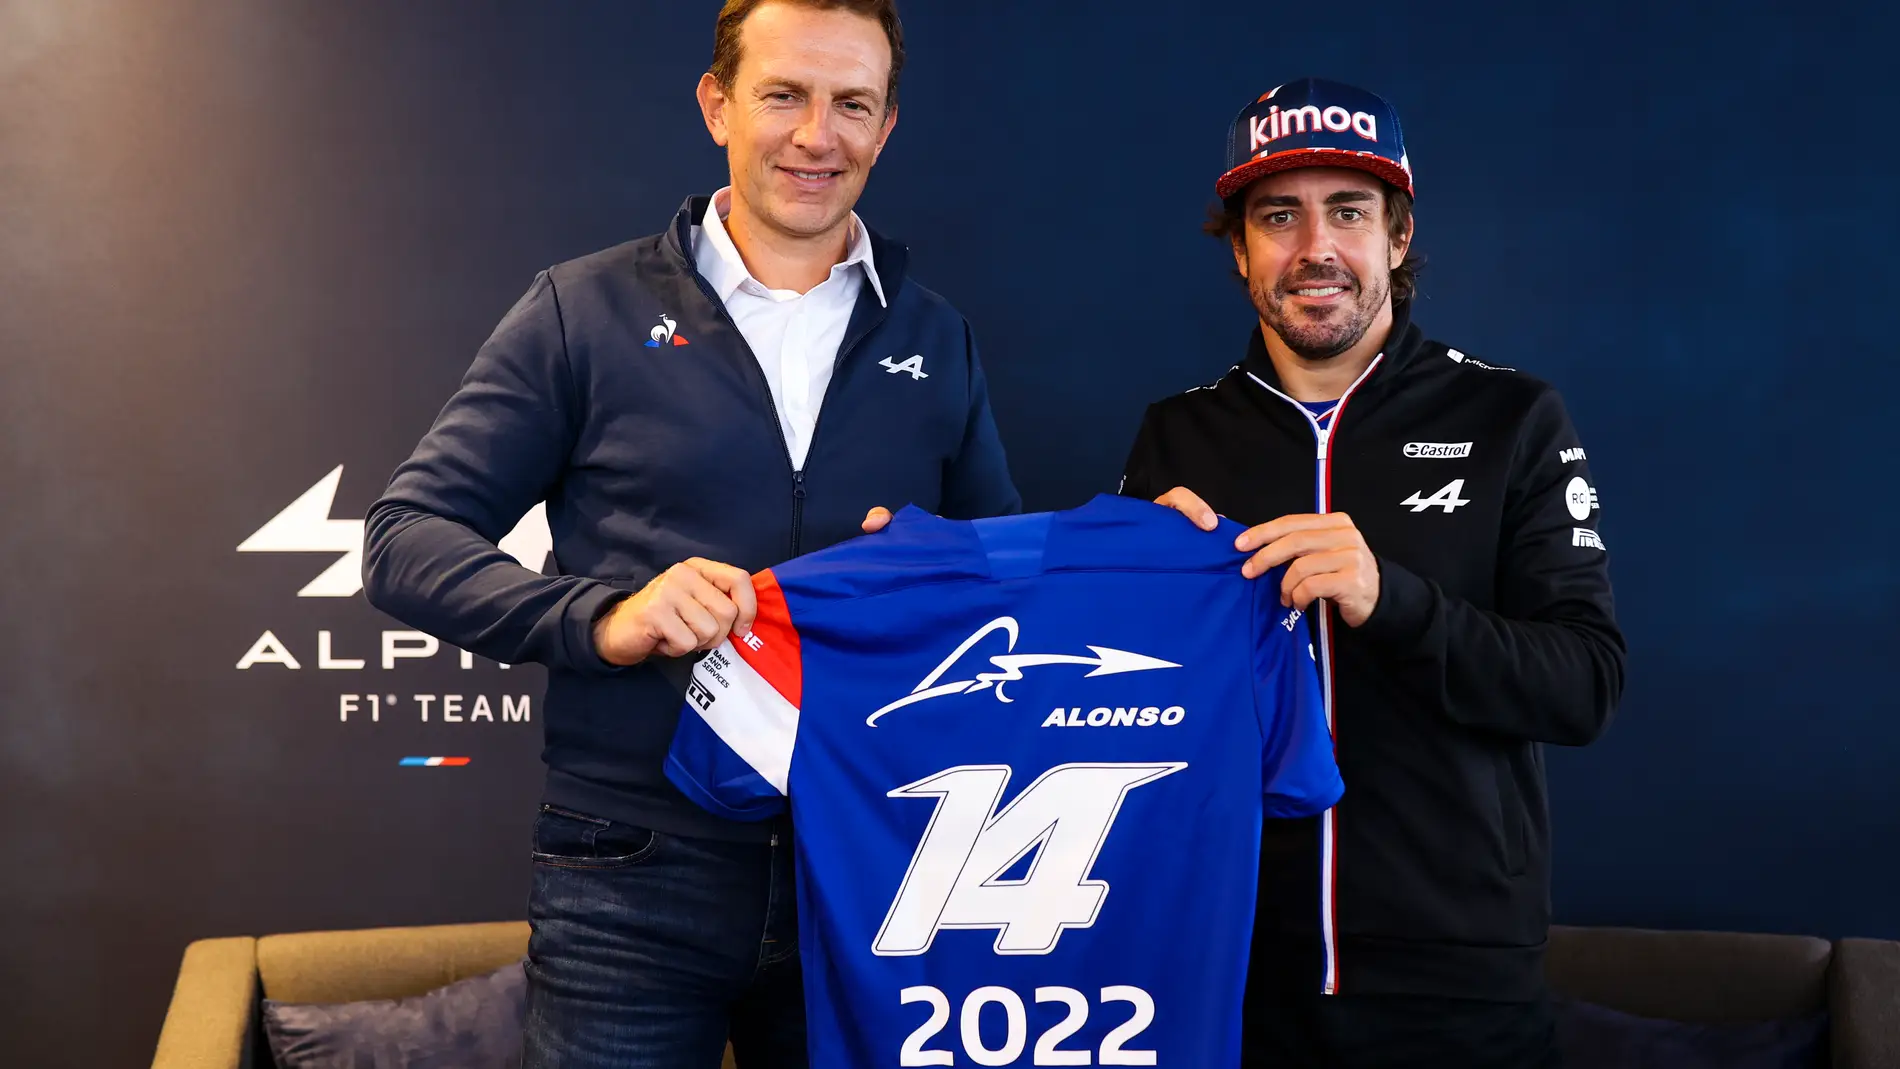 Fernando y su decisión de atar su futuro en la Fórmula 1 al de Alpine